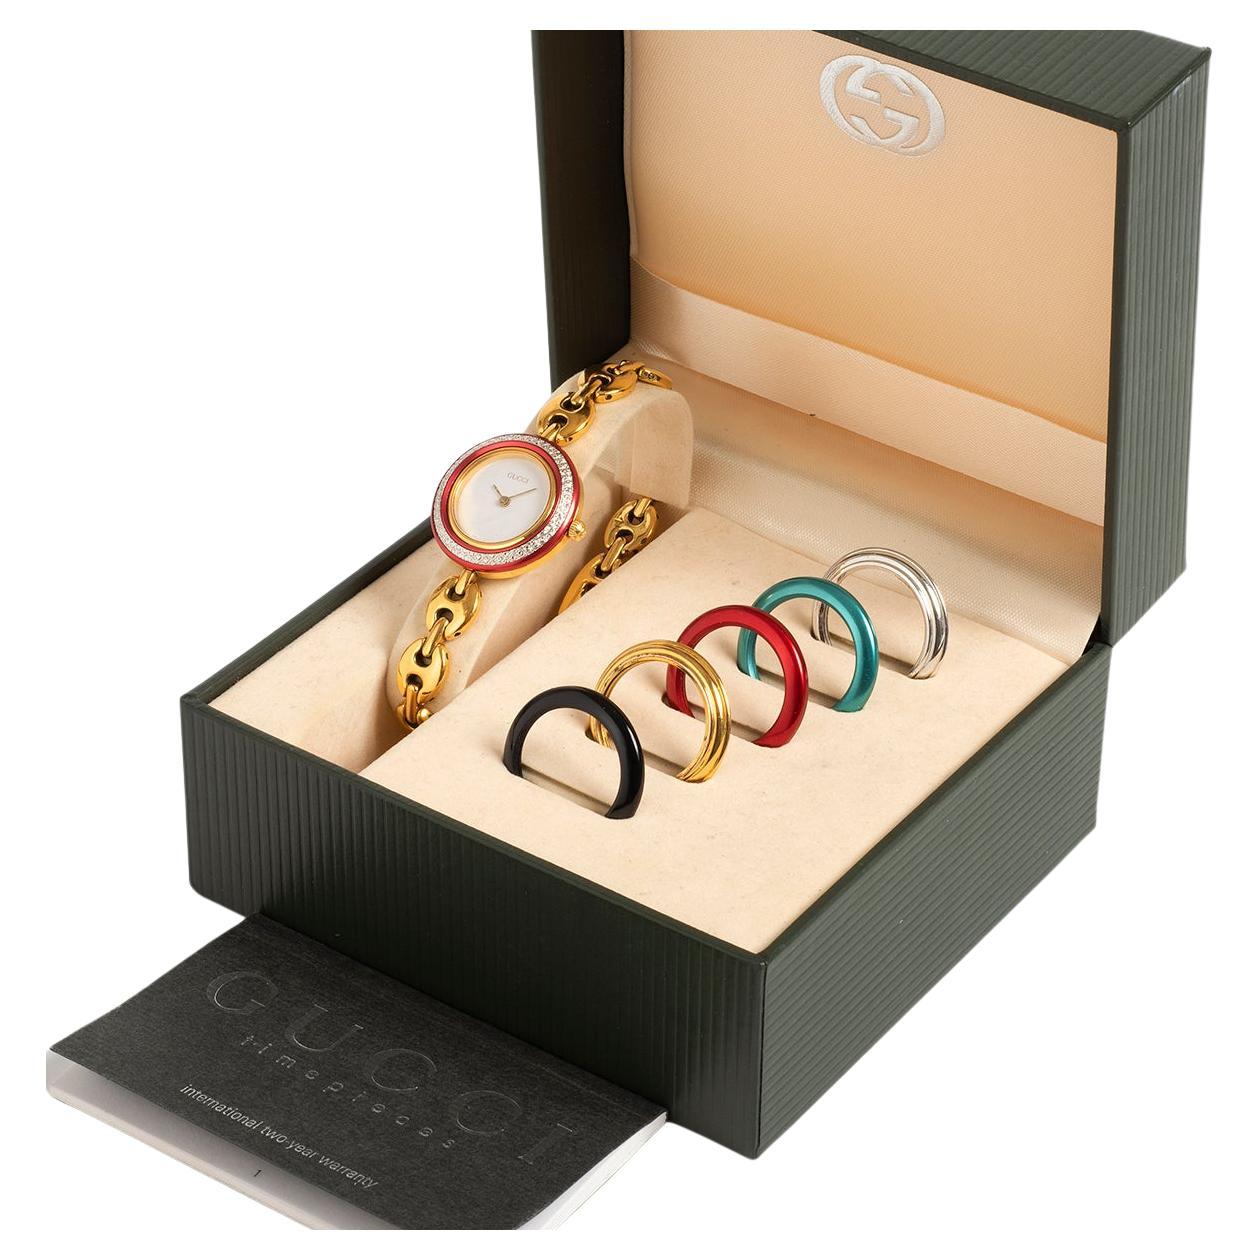 ☆GUCCIグッチ GタイムレスYA126511 レディース腕時計☆ 腕時計 ファッション小物 レディース 通販限定商品